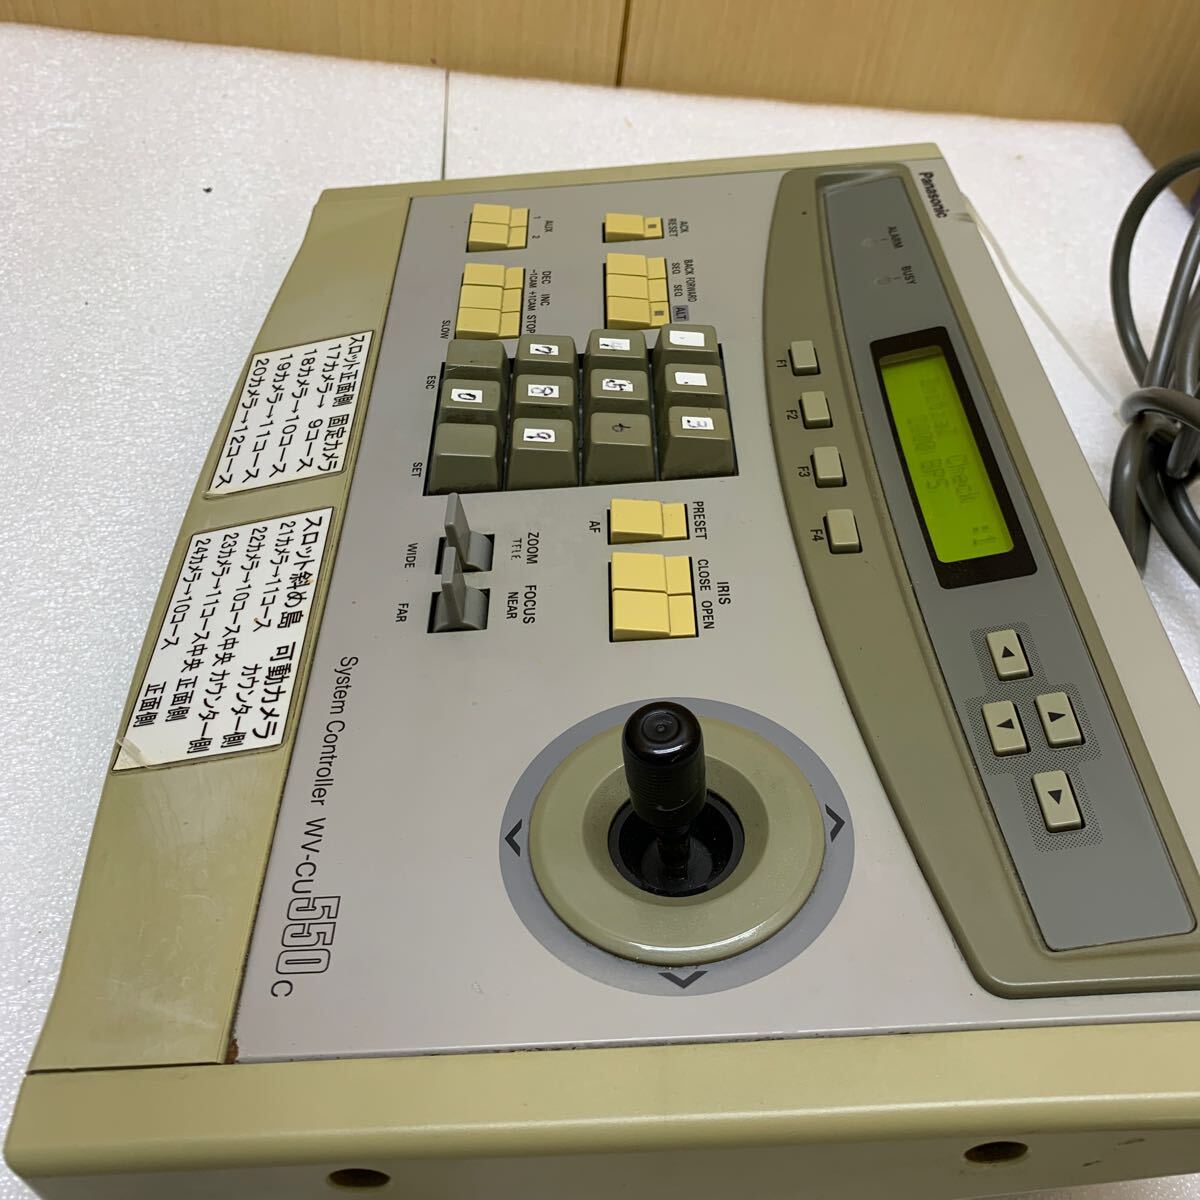 MK5753 Panasonic Panasonic система контроллер WV-CU550C б/у текущее состояние товар для бизнеса электризация проверка ..20240315